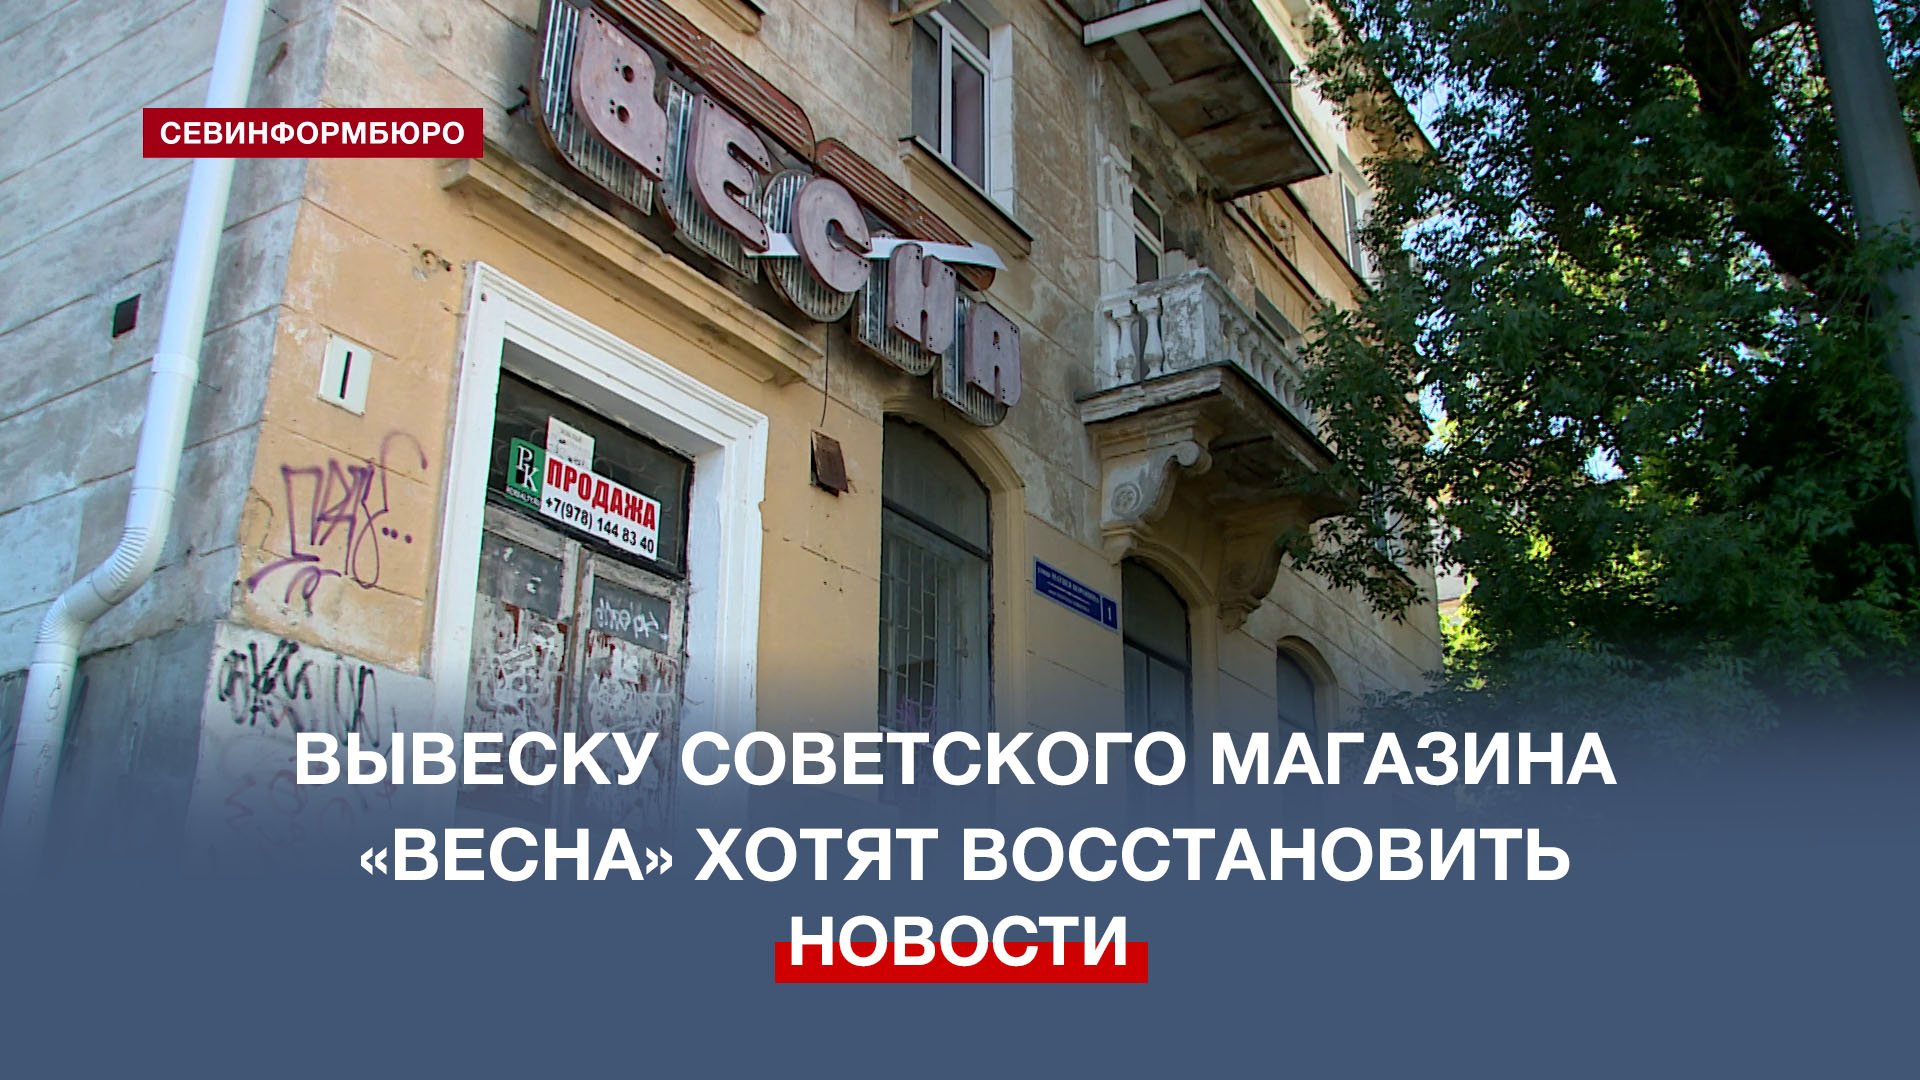 Вывеску советского магазина для новобрачных «Весна» в Севастополе планируют восстановить